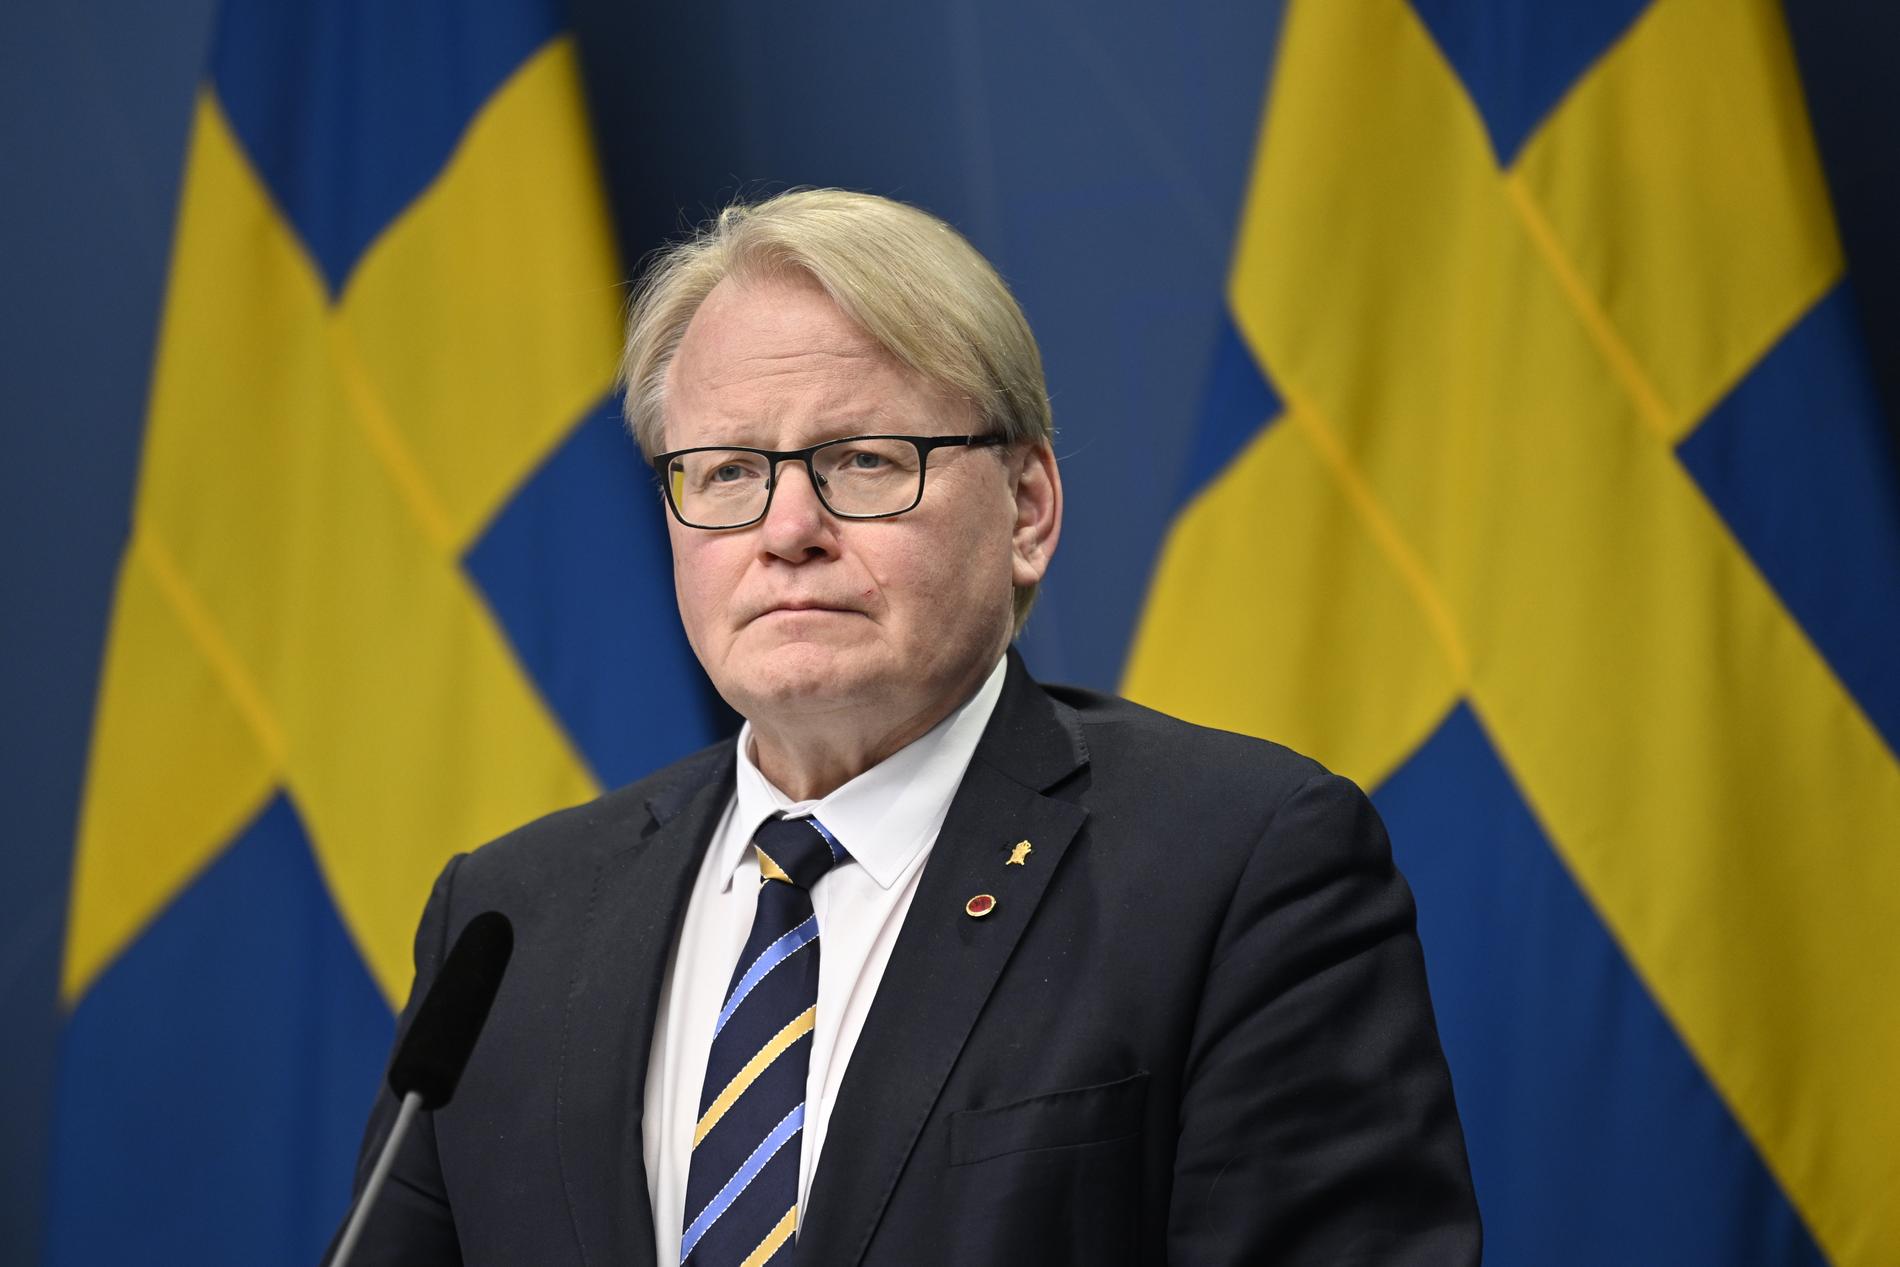 Regeringen har beslutat om ytterligare ett stödpaket till Ukraina till ett värde av 500 miljoner kronor. Det meddelade försvarsminister Peter Hultqvist (S) på torsdagen.